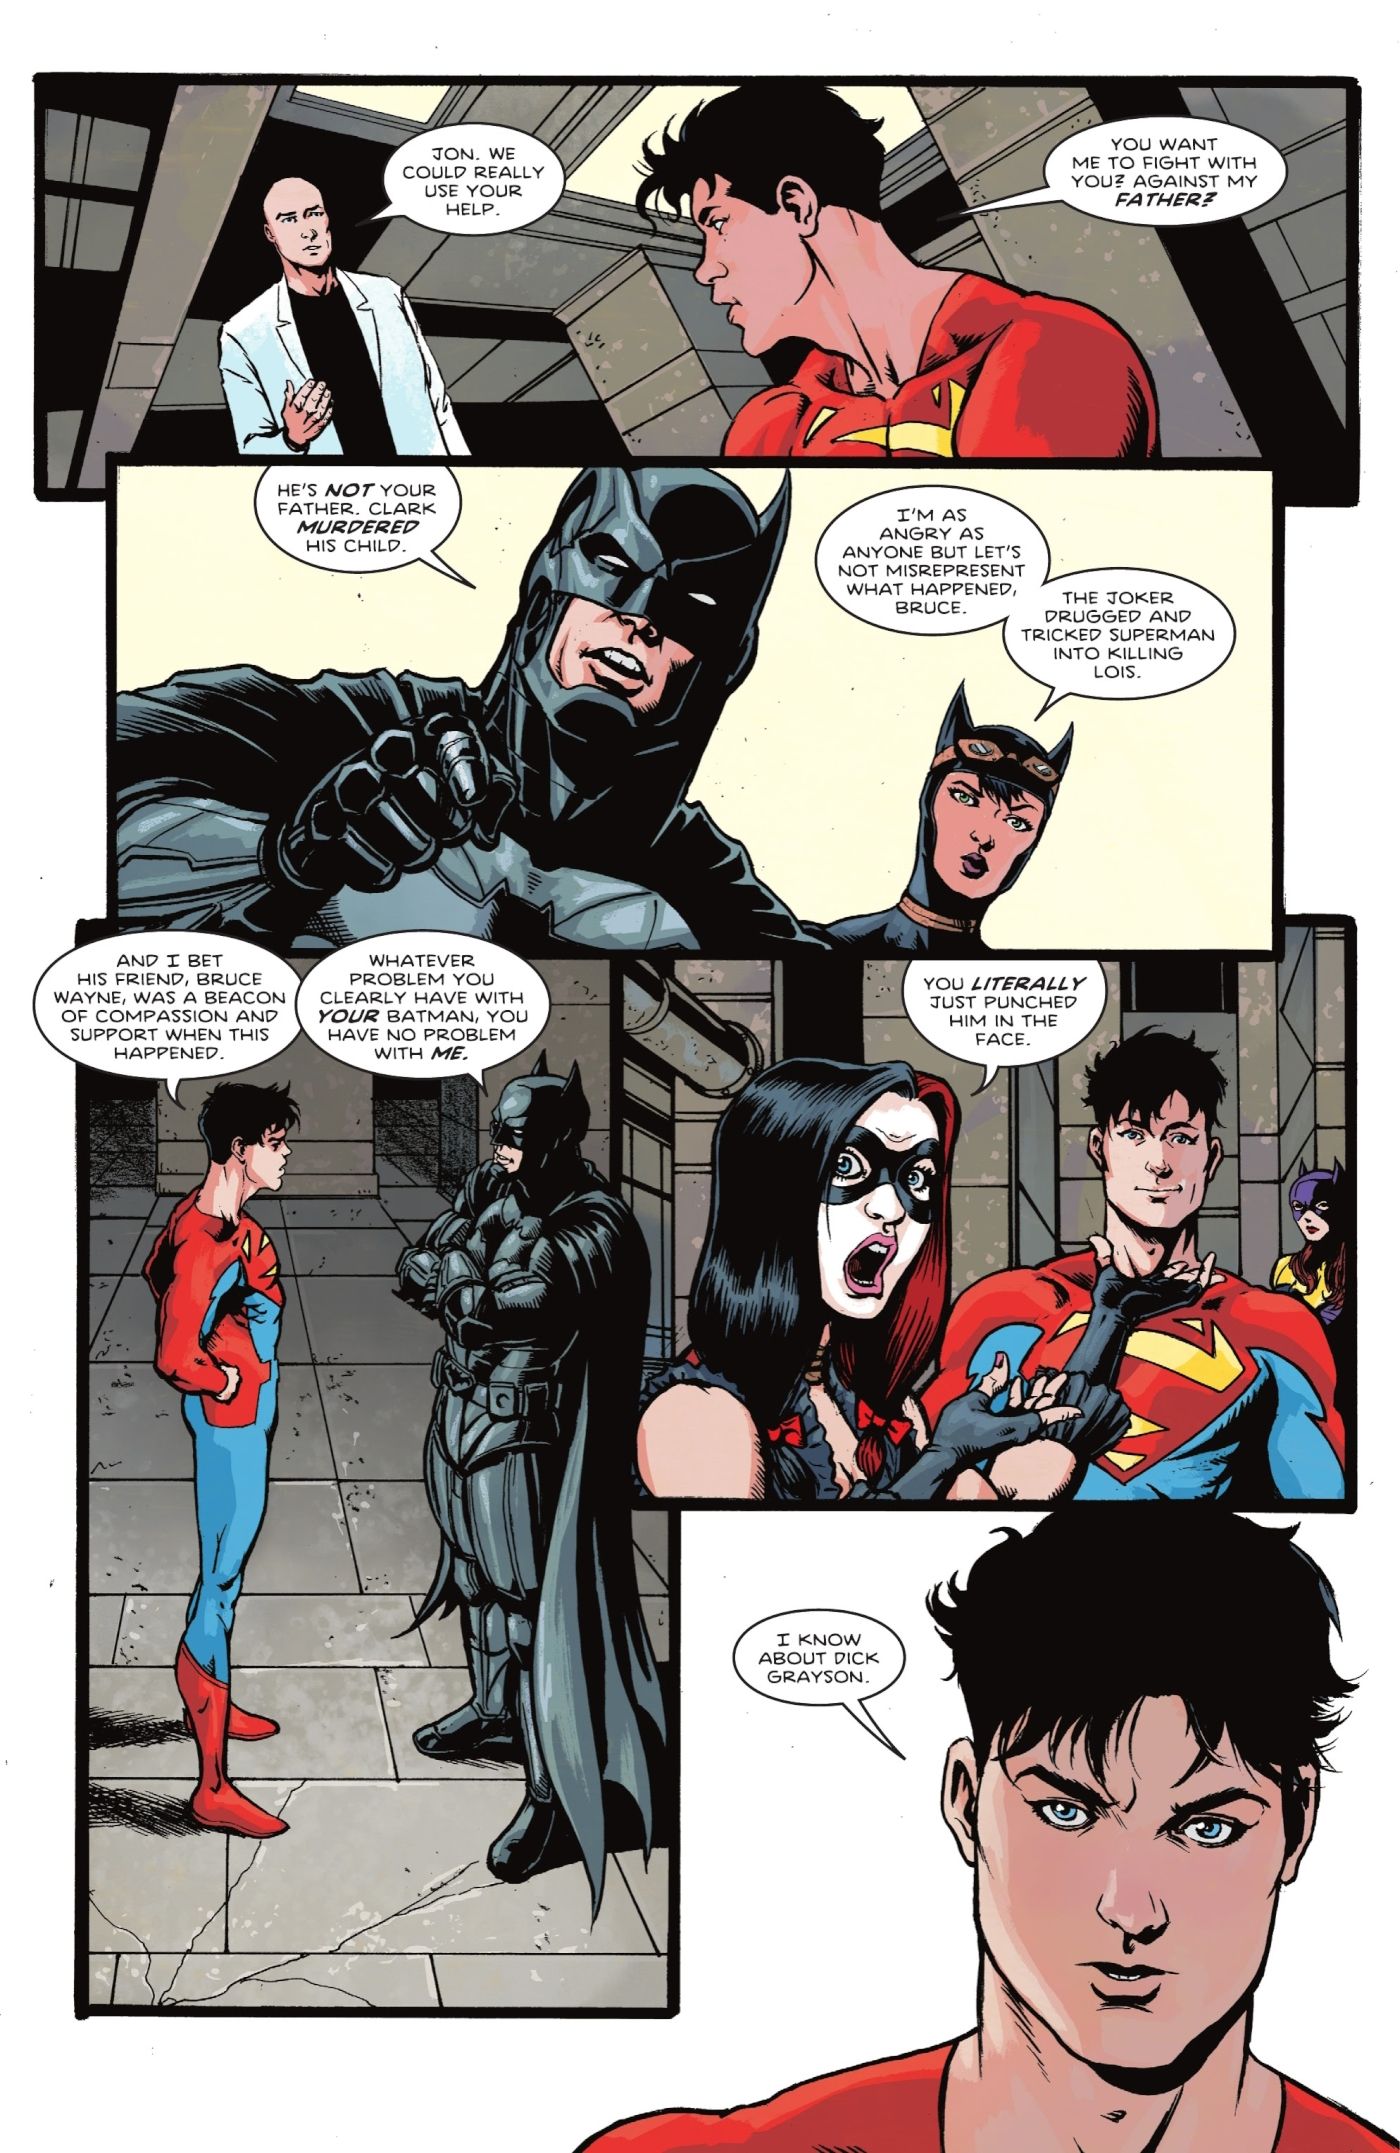 Batman vs. Superman's Son: DC Hints at Its Next Big Rivalry